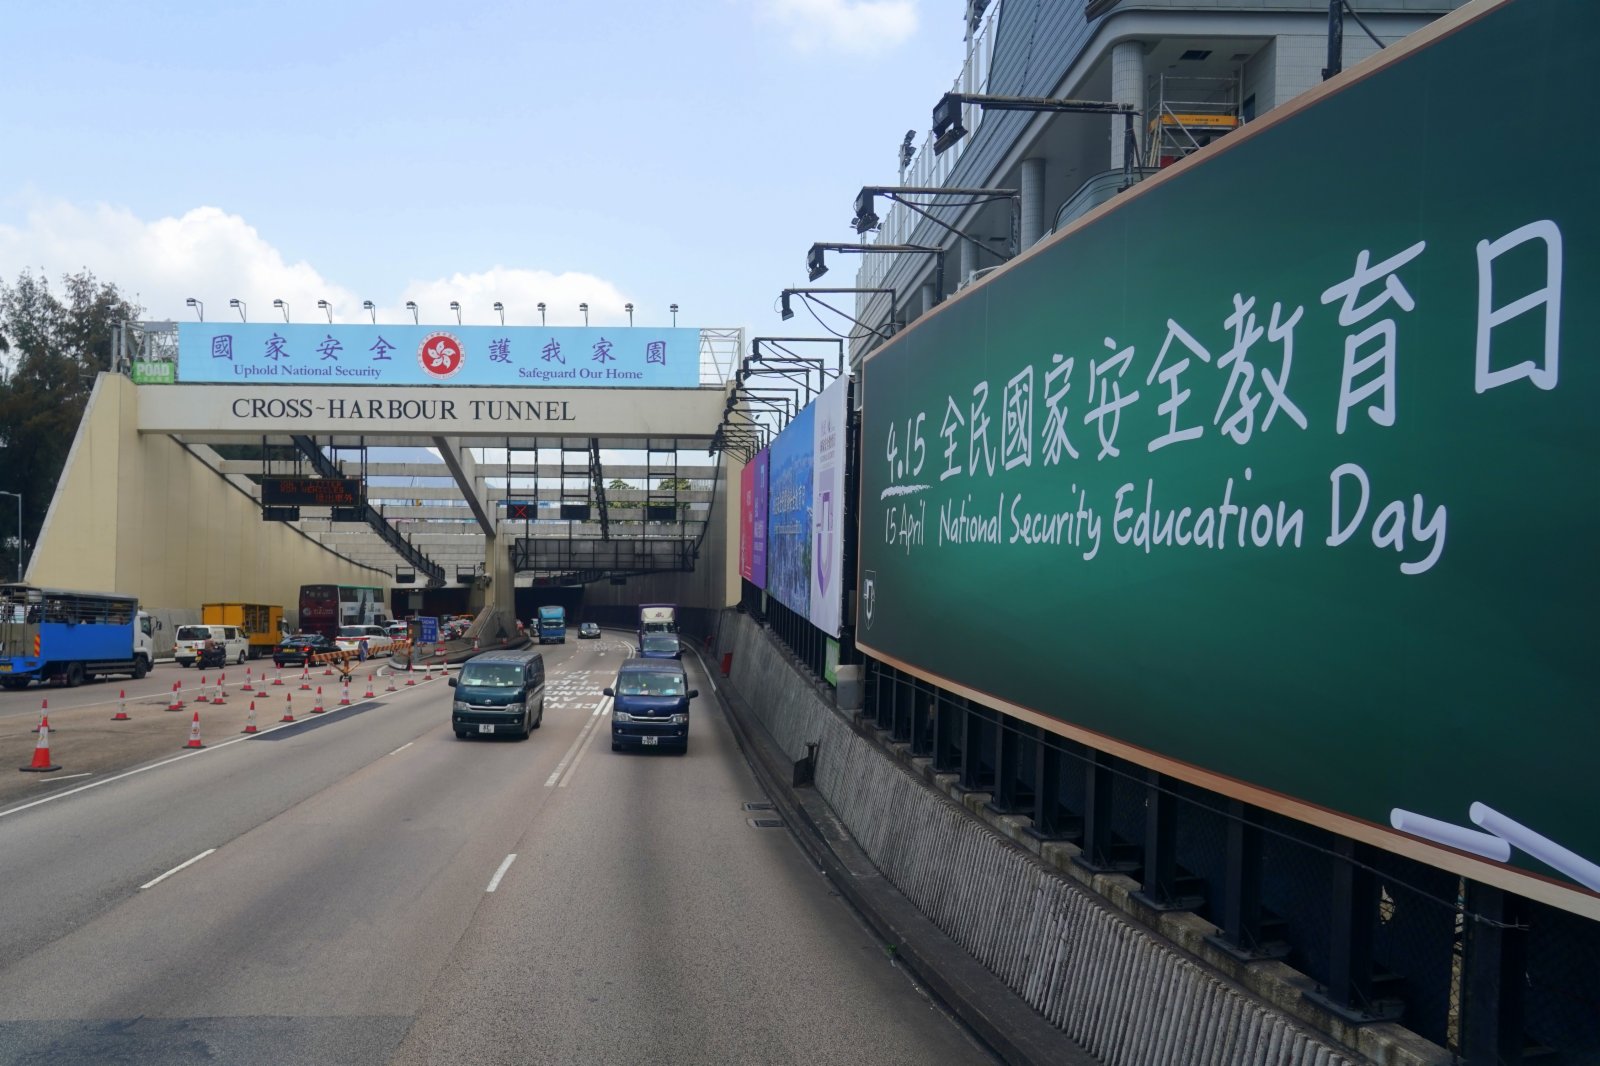 圖為位於紅磡海底隧道港島出入口的「全民國家安全教育日」大型廣告牌。